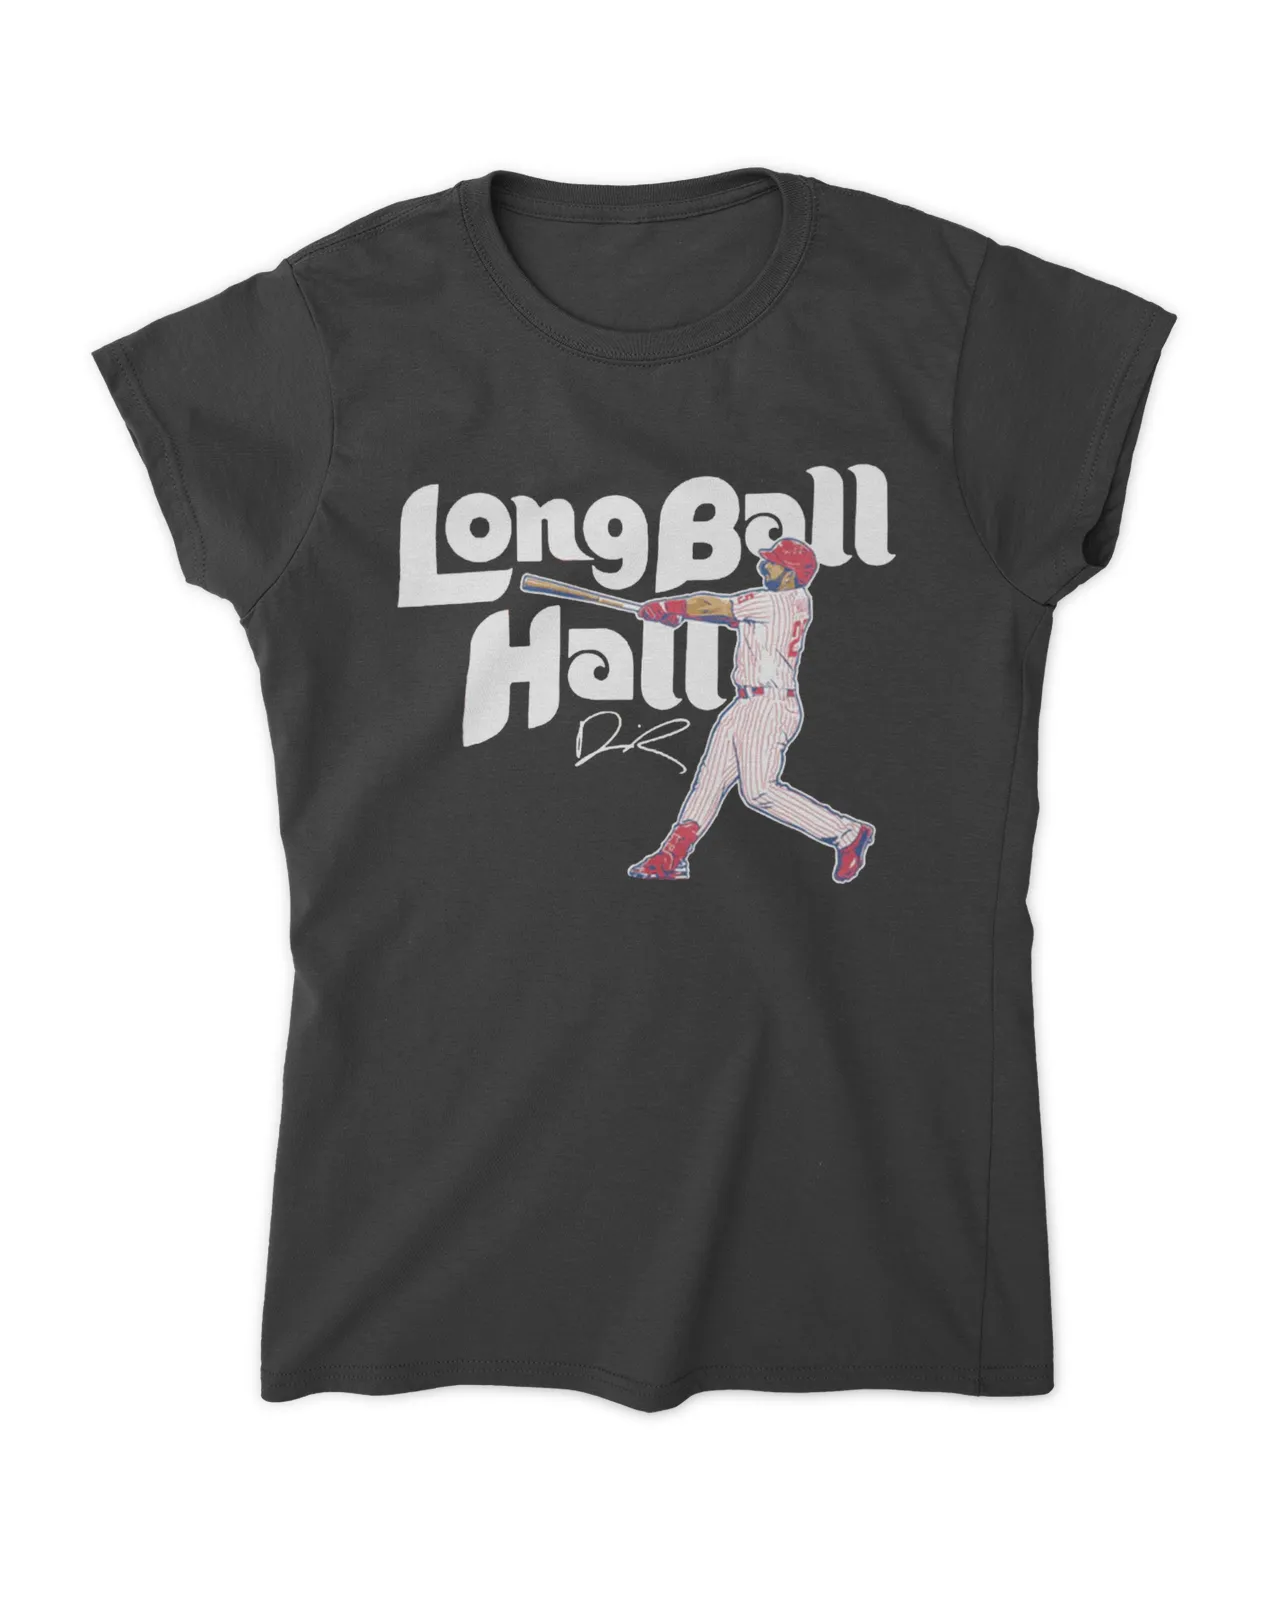 Darick Hall Long Ball Hall Shirt